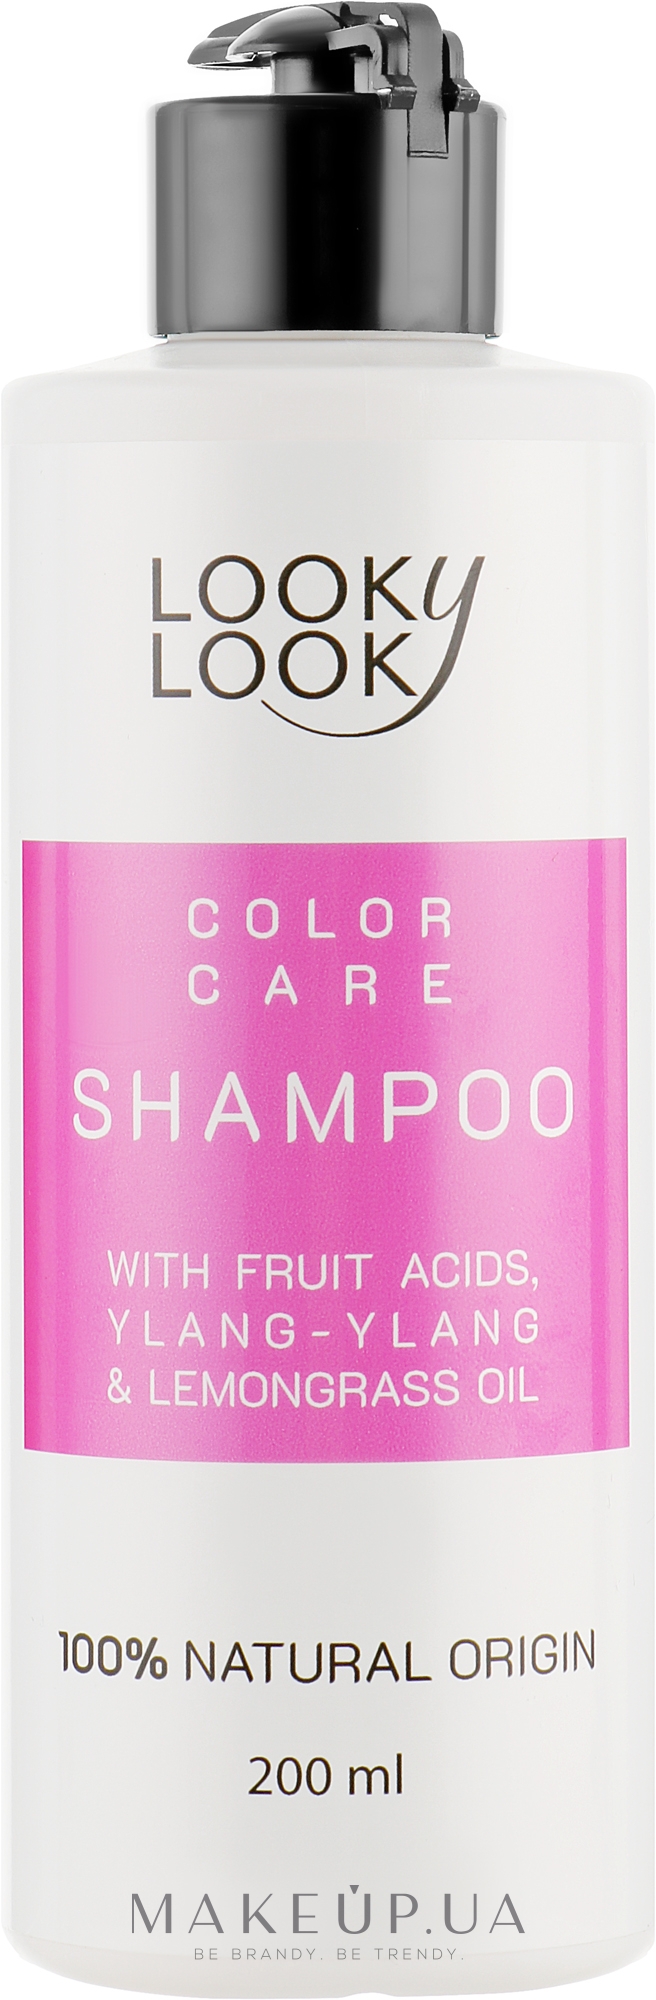 Шампунь для окрашенных волос "Стойкий цвет" с фруктовыми кислотами - Looky Look Hair Care Shampoo — фото 200ml